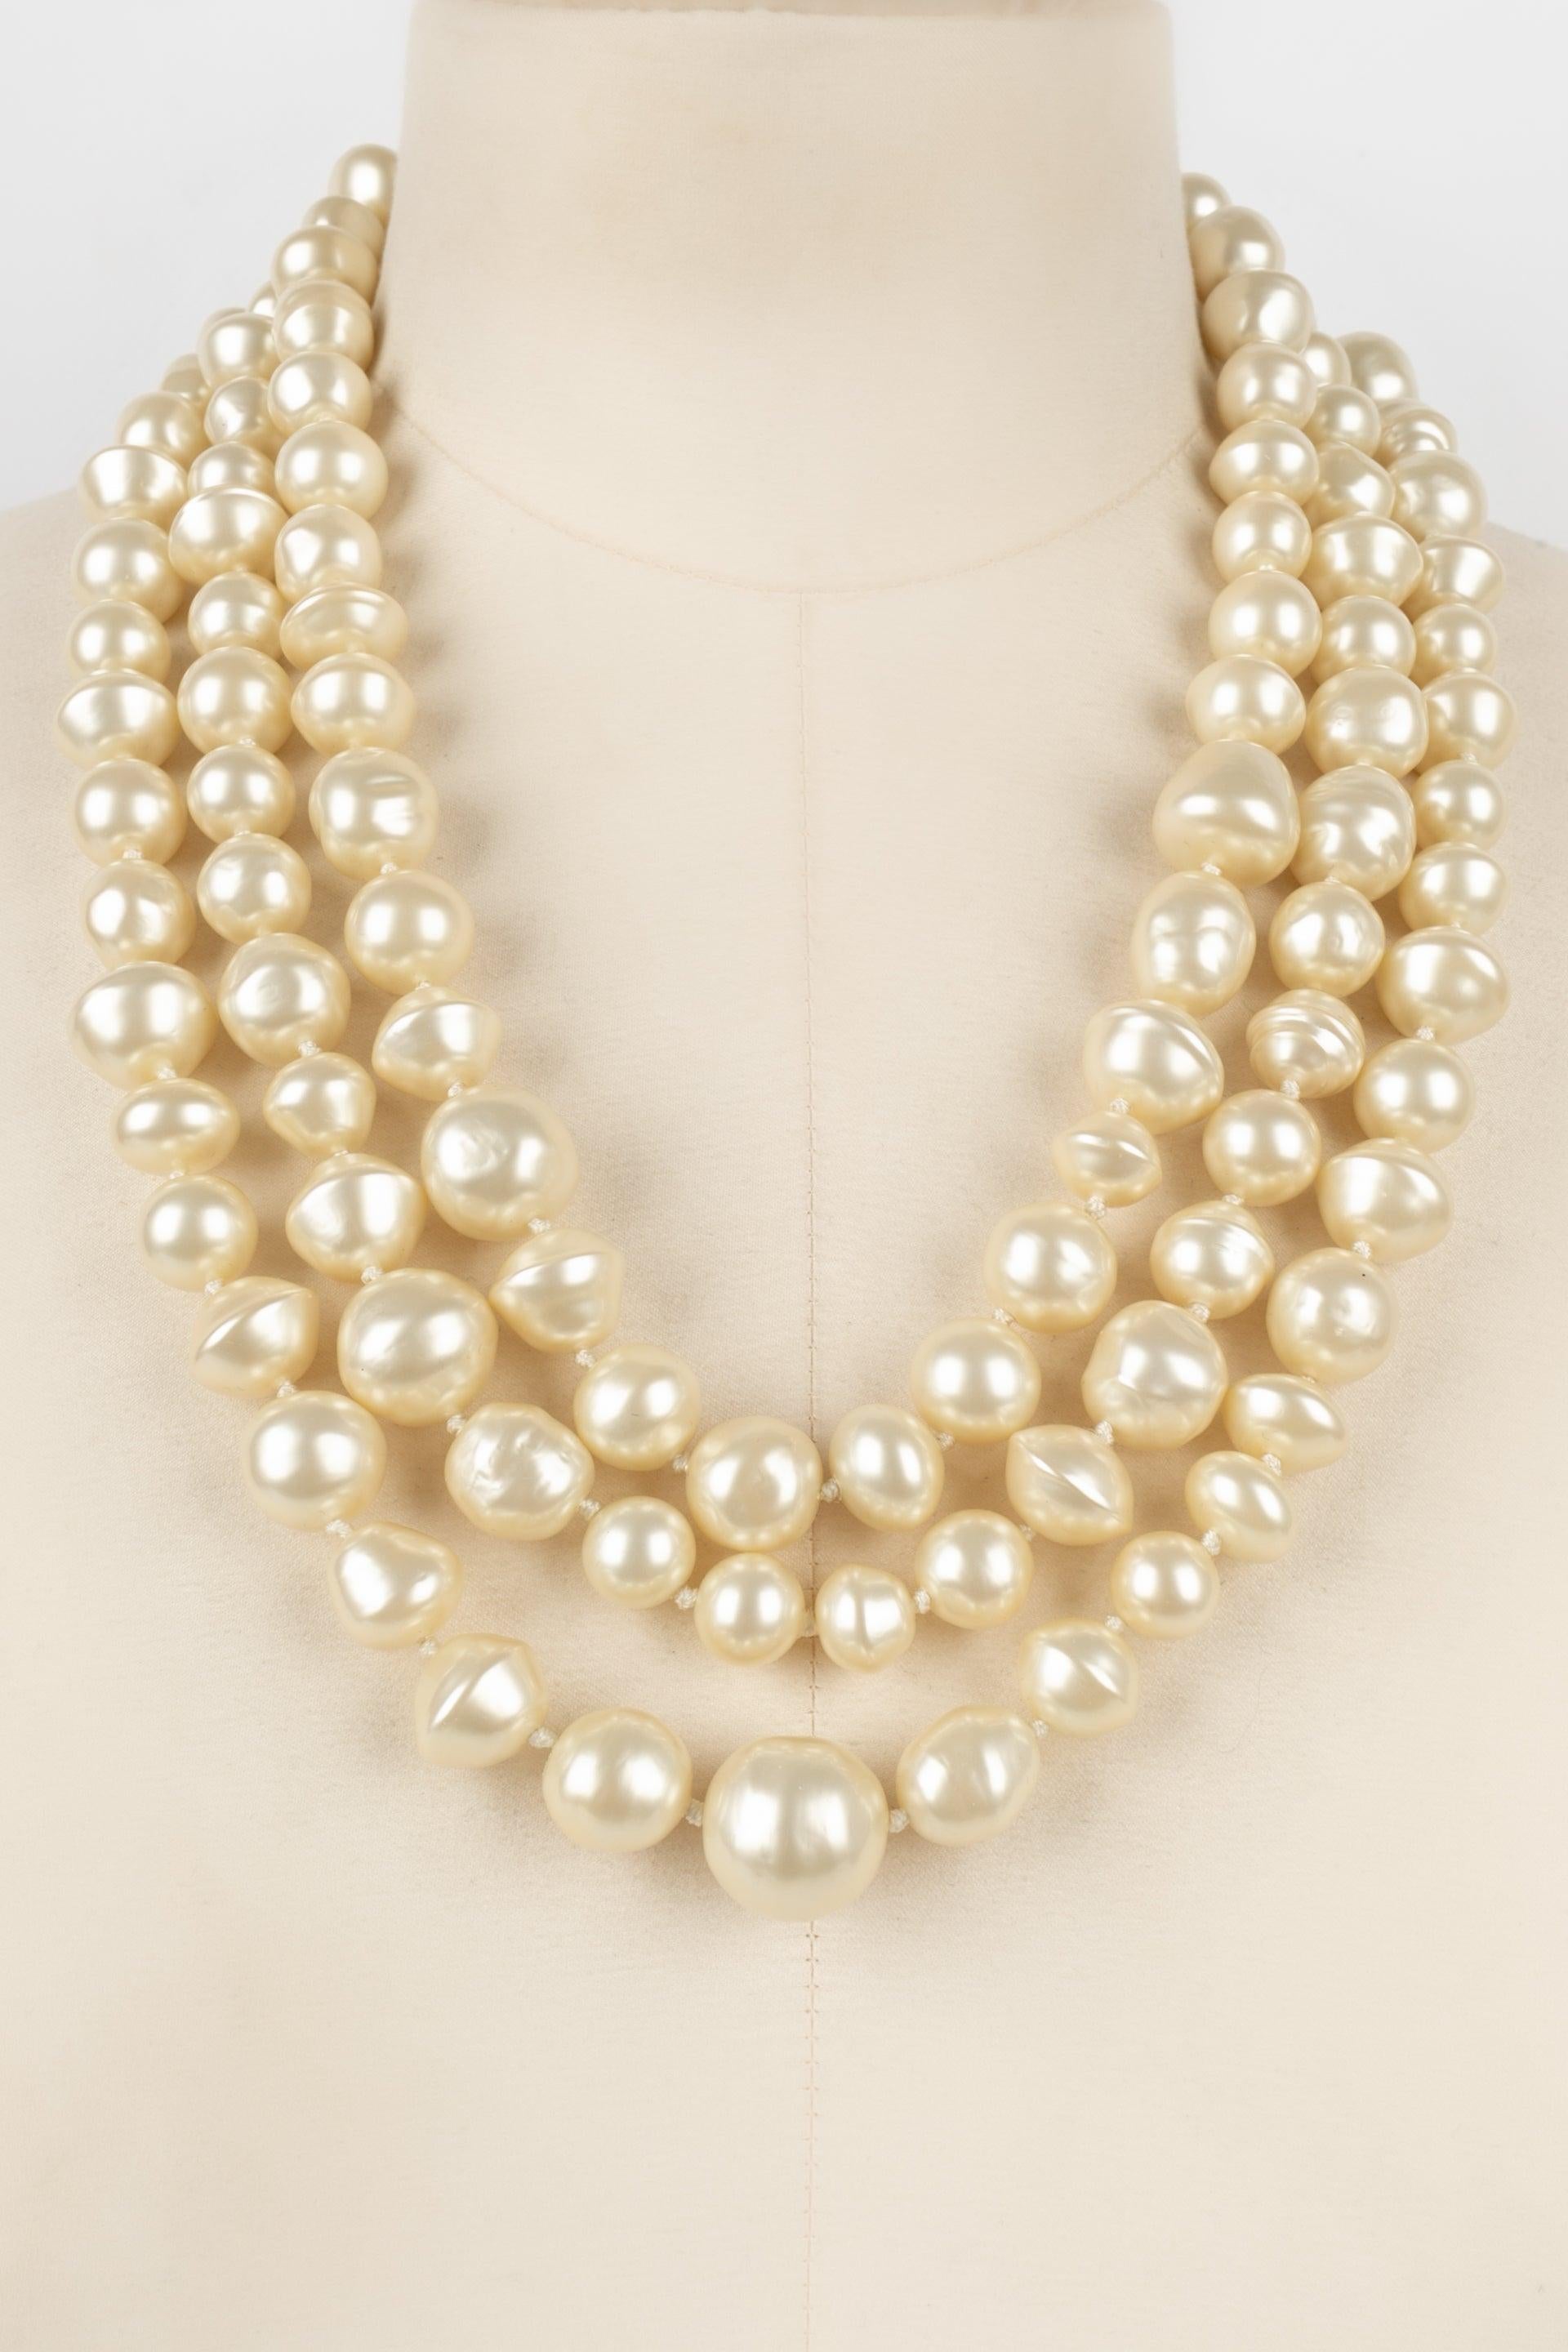 Chanel - (Fabriqué en France) Collier à trois rangs de perles fantaisie assemblées par des nœuds.

Informations complémentaires :
Condit : Très bon état.
Dimensions : Longueur de la rangée la plus courte : de 54 cm à 60 cm

Référence du vendeur :